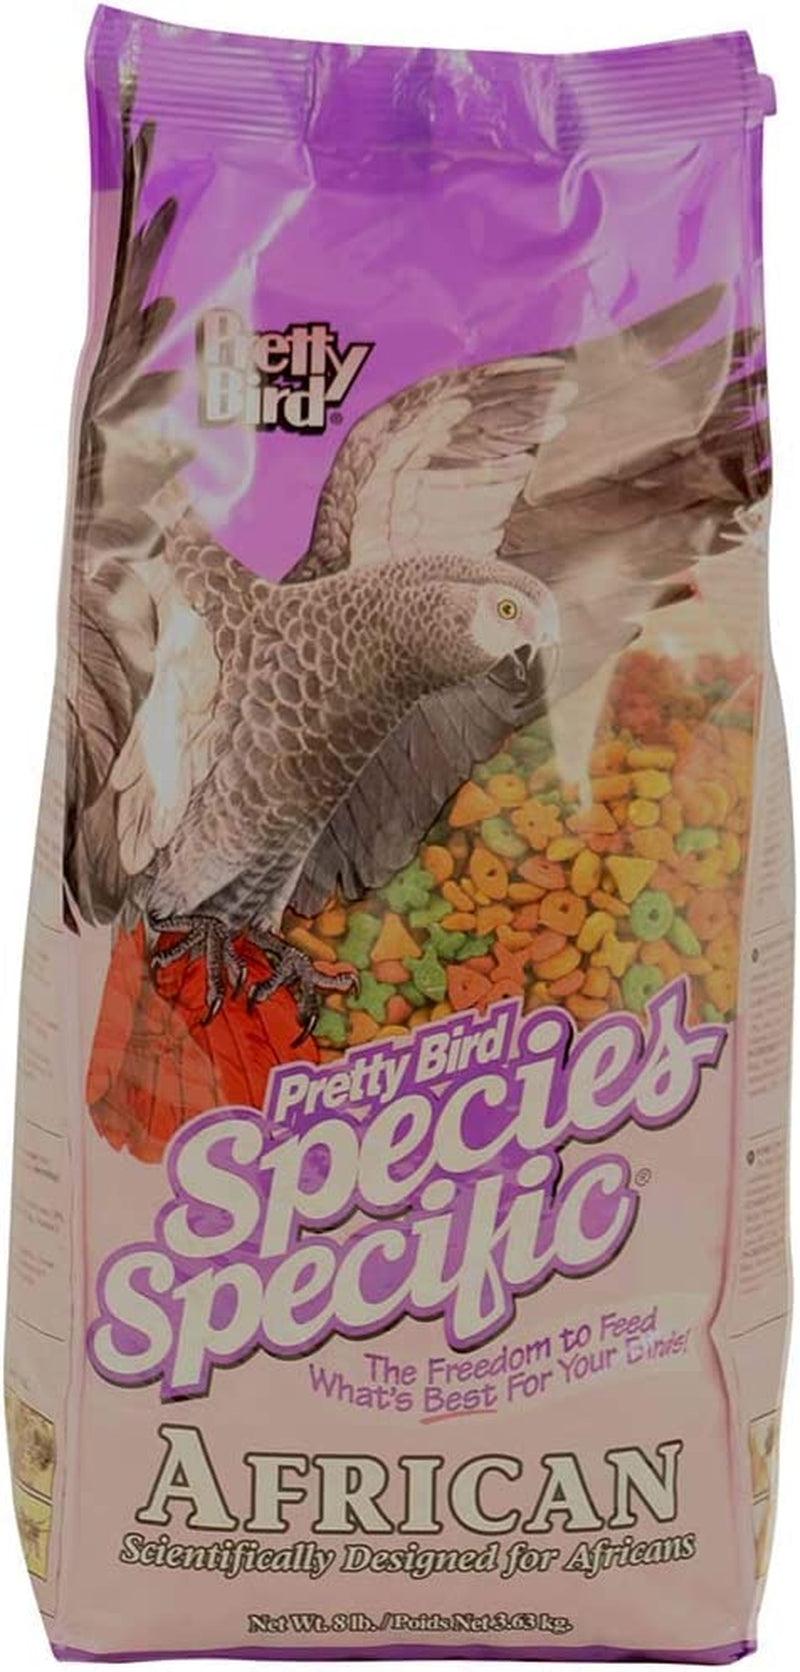 Pretty Bird International Species Specific African Bird Food- 8-Pound